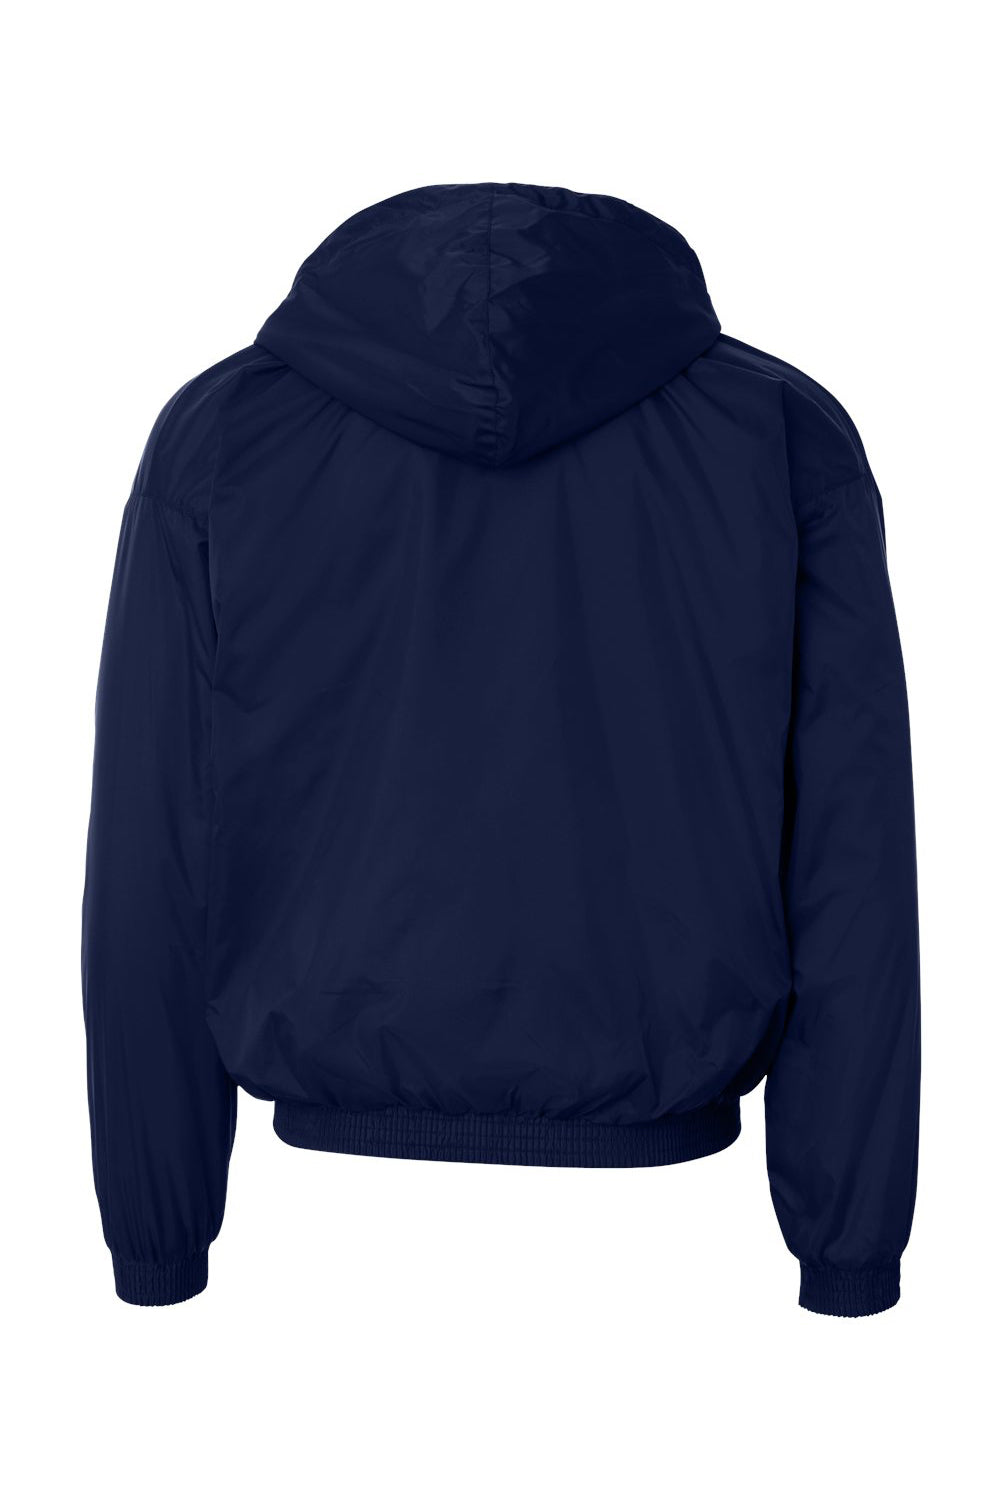 Augusta Sportswear 3280 Mens Full Zip Hooded Jacket Navy Blue Flat Back